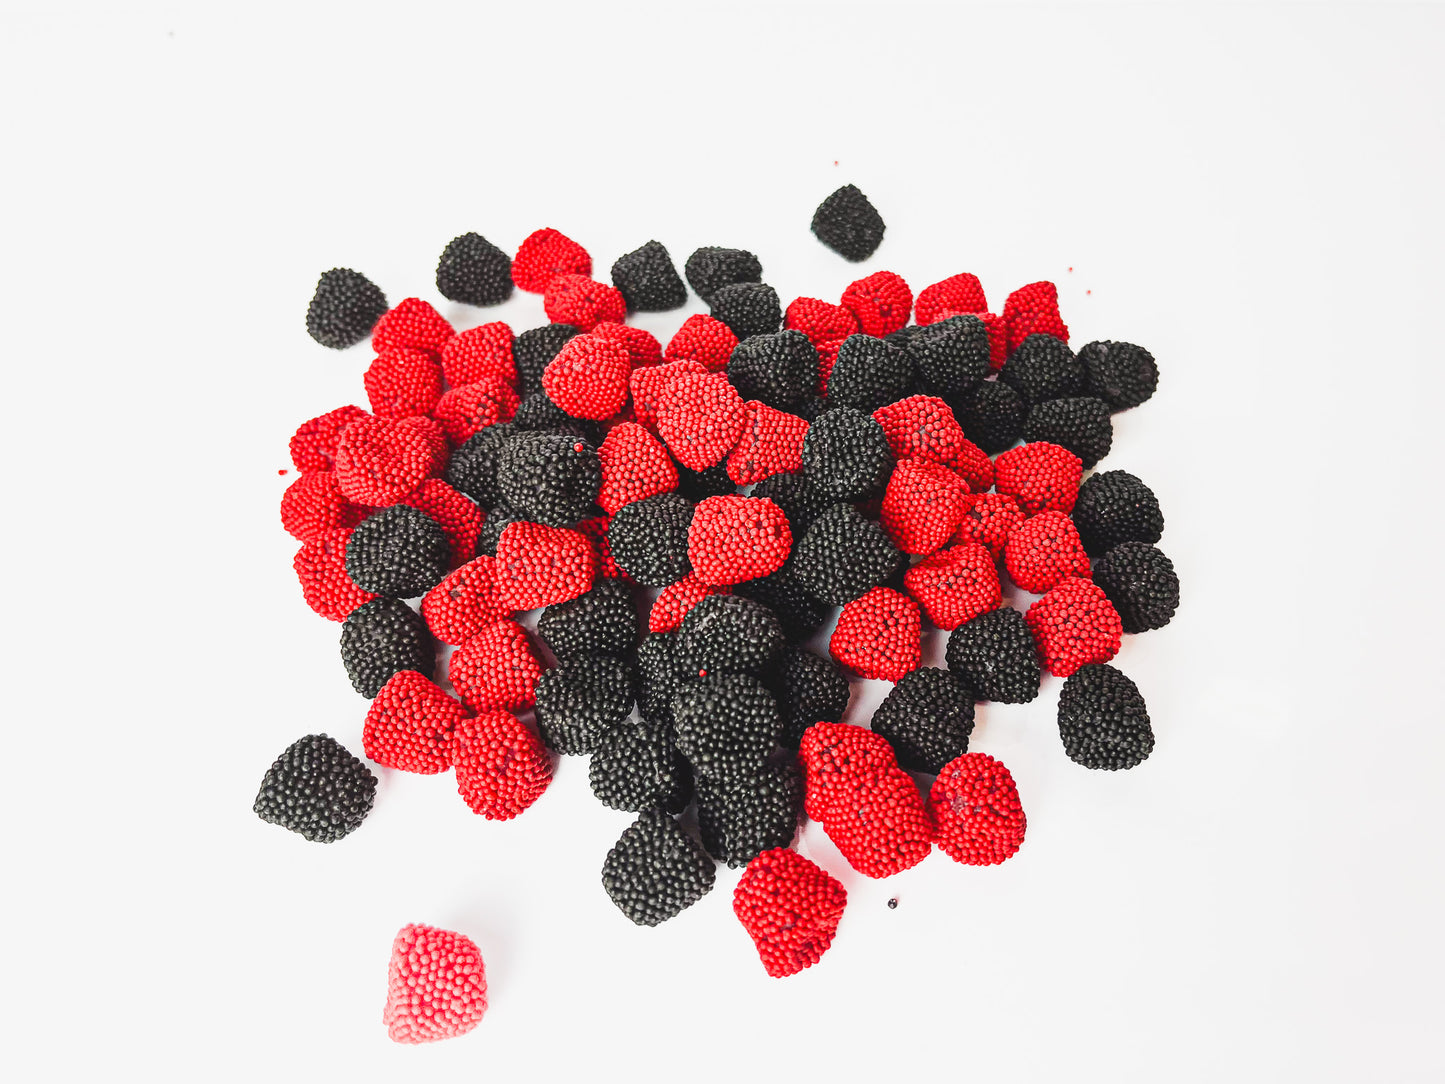 Raspberries and Blackberries